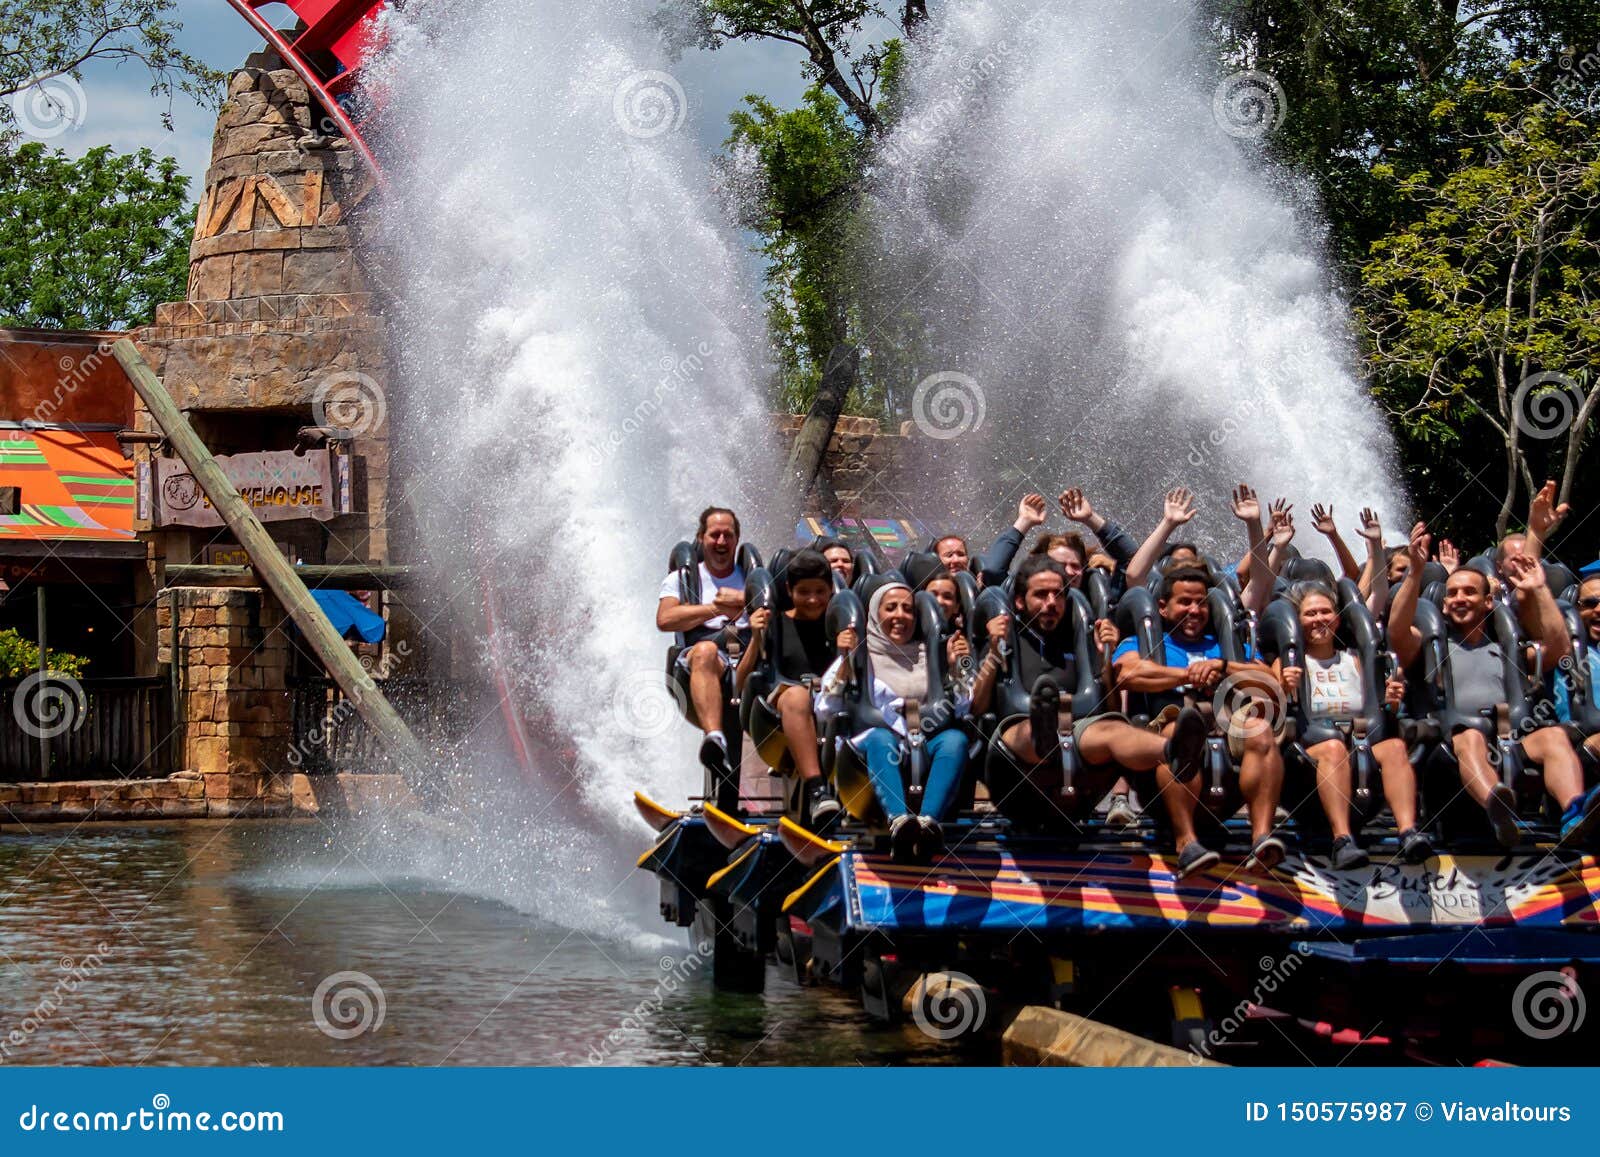 Sheikra Roller Coaster Splashing On Her Ride At Busch Gardens 1